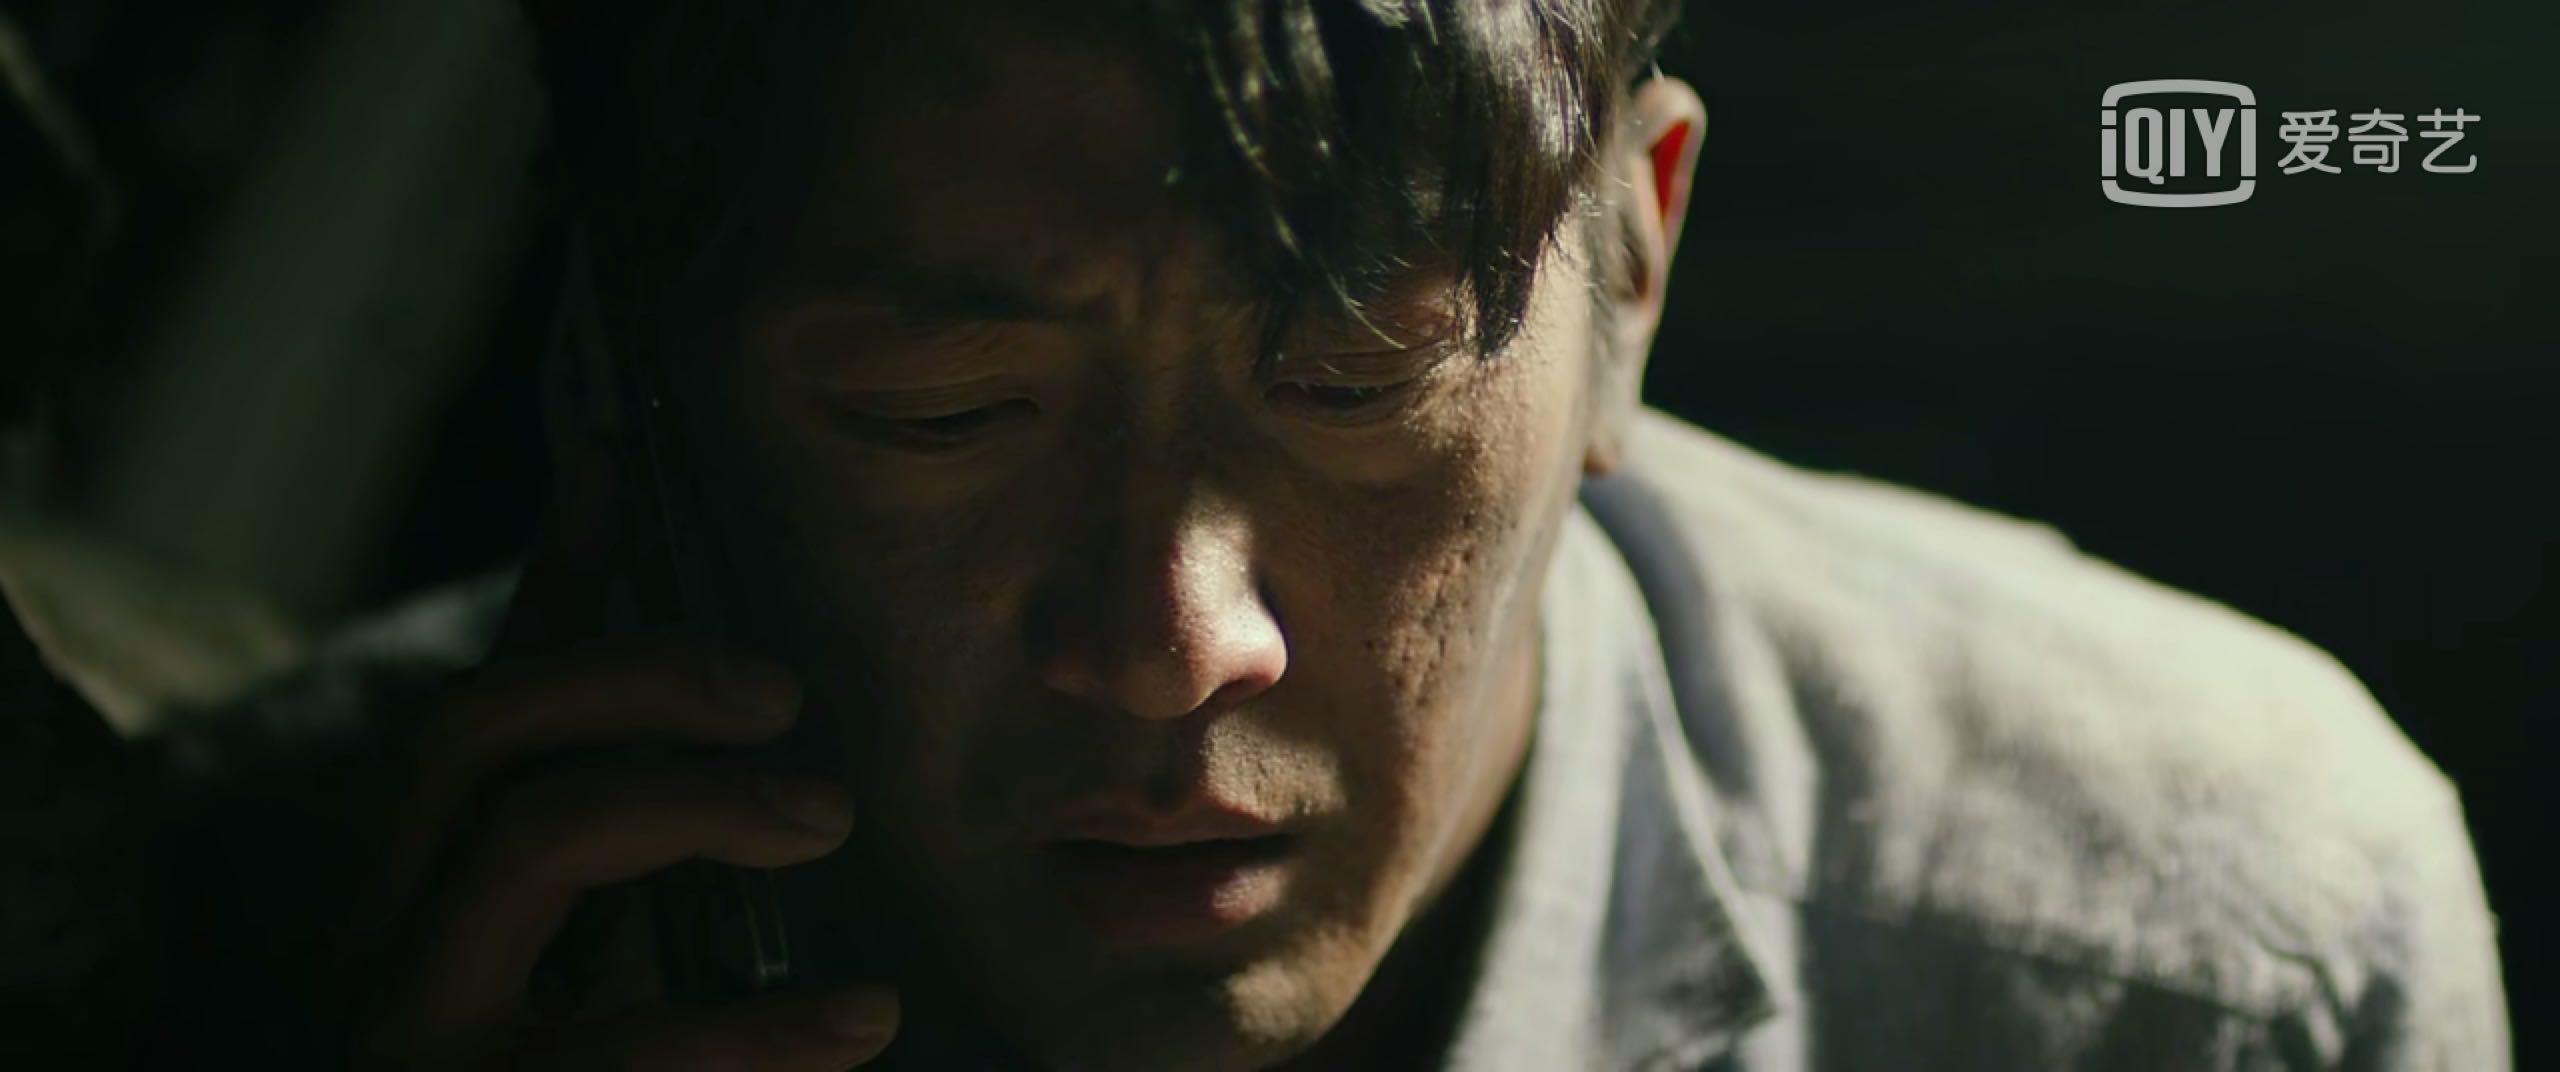 韩国高分灾难电影《隧道》，这几处逻辑漏洞你可曾看破？